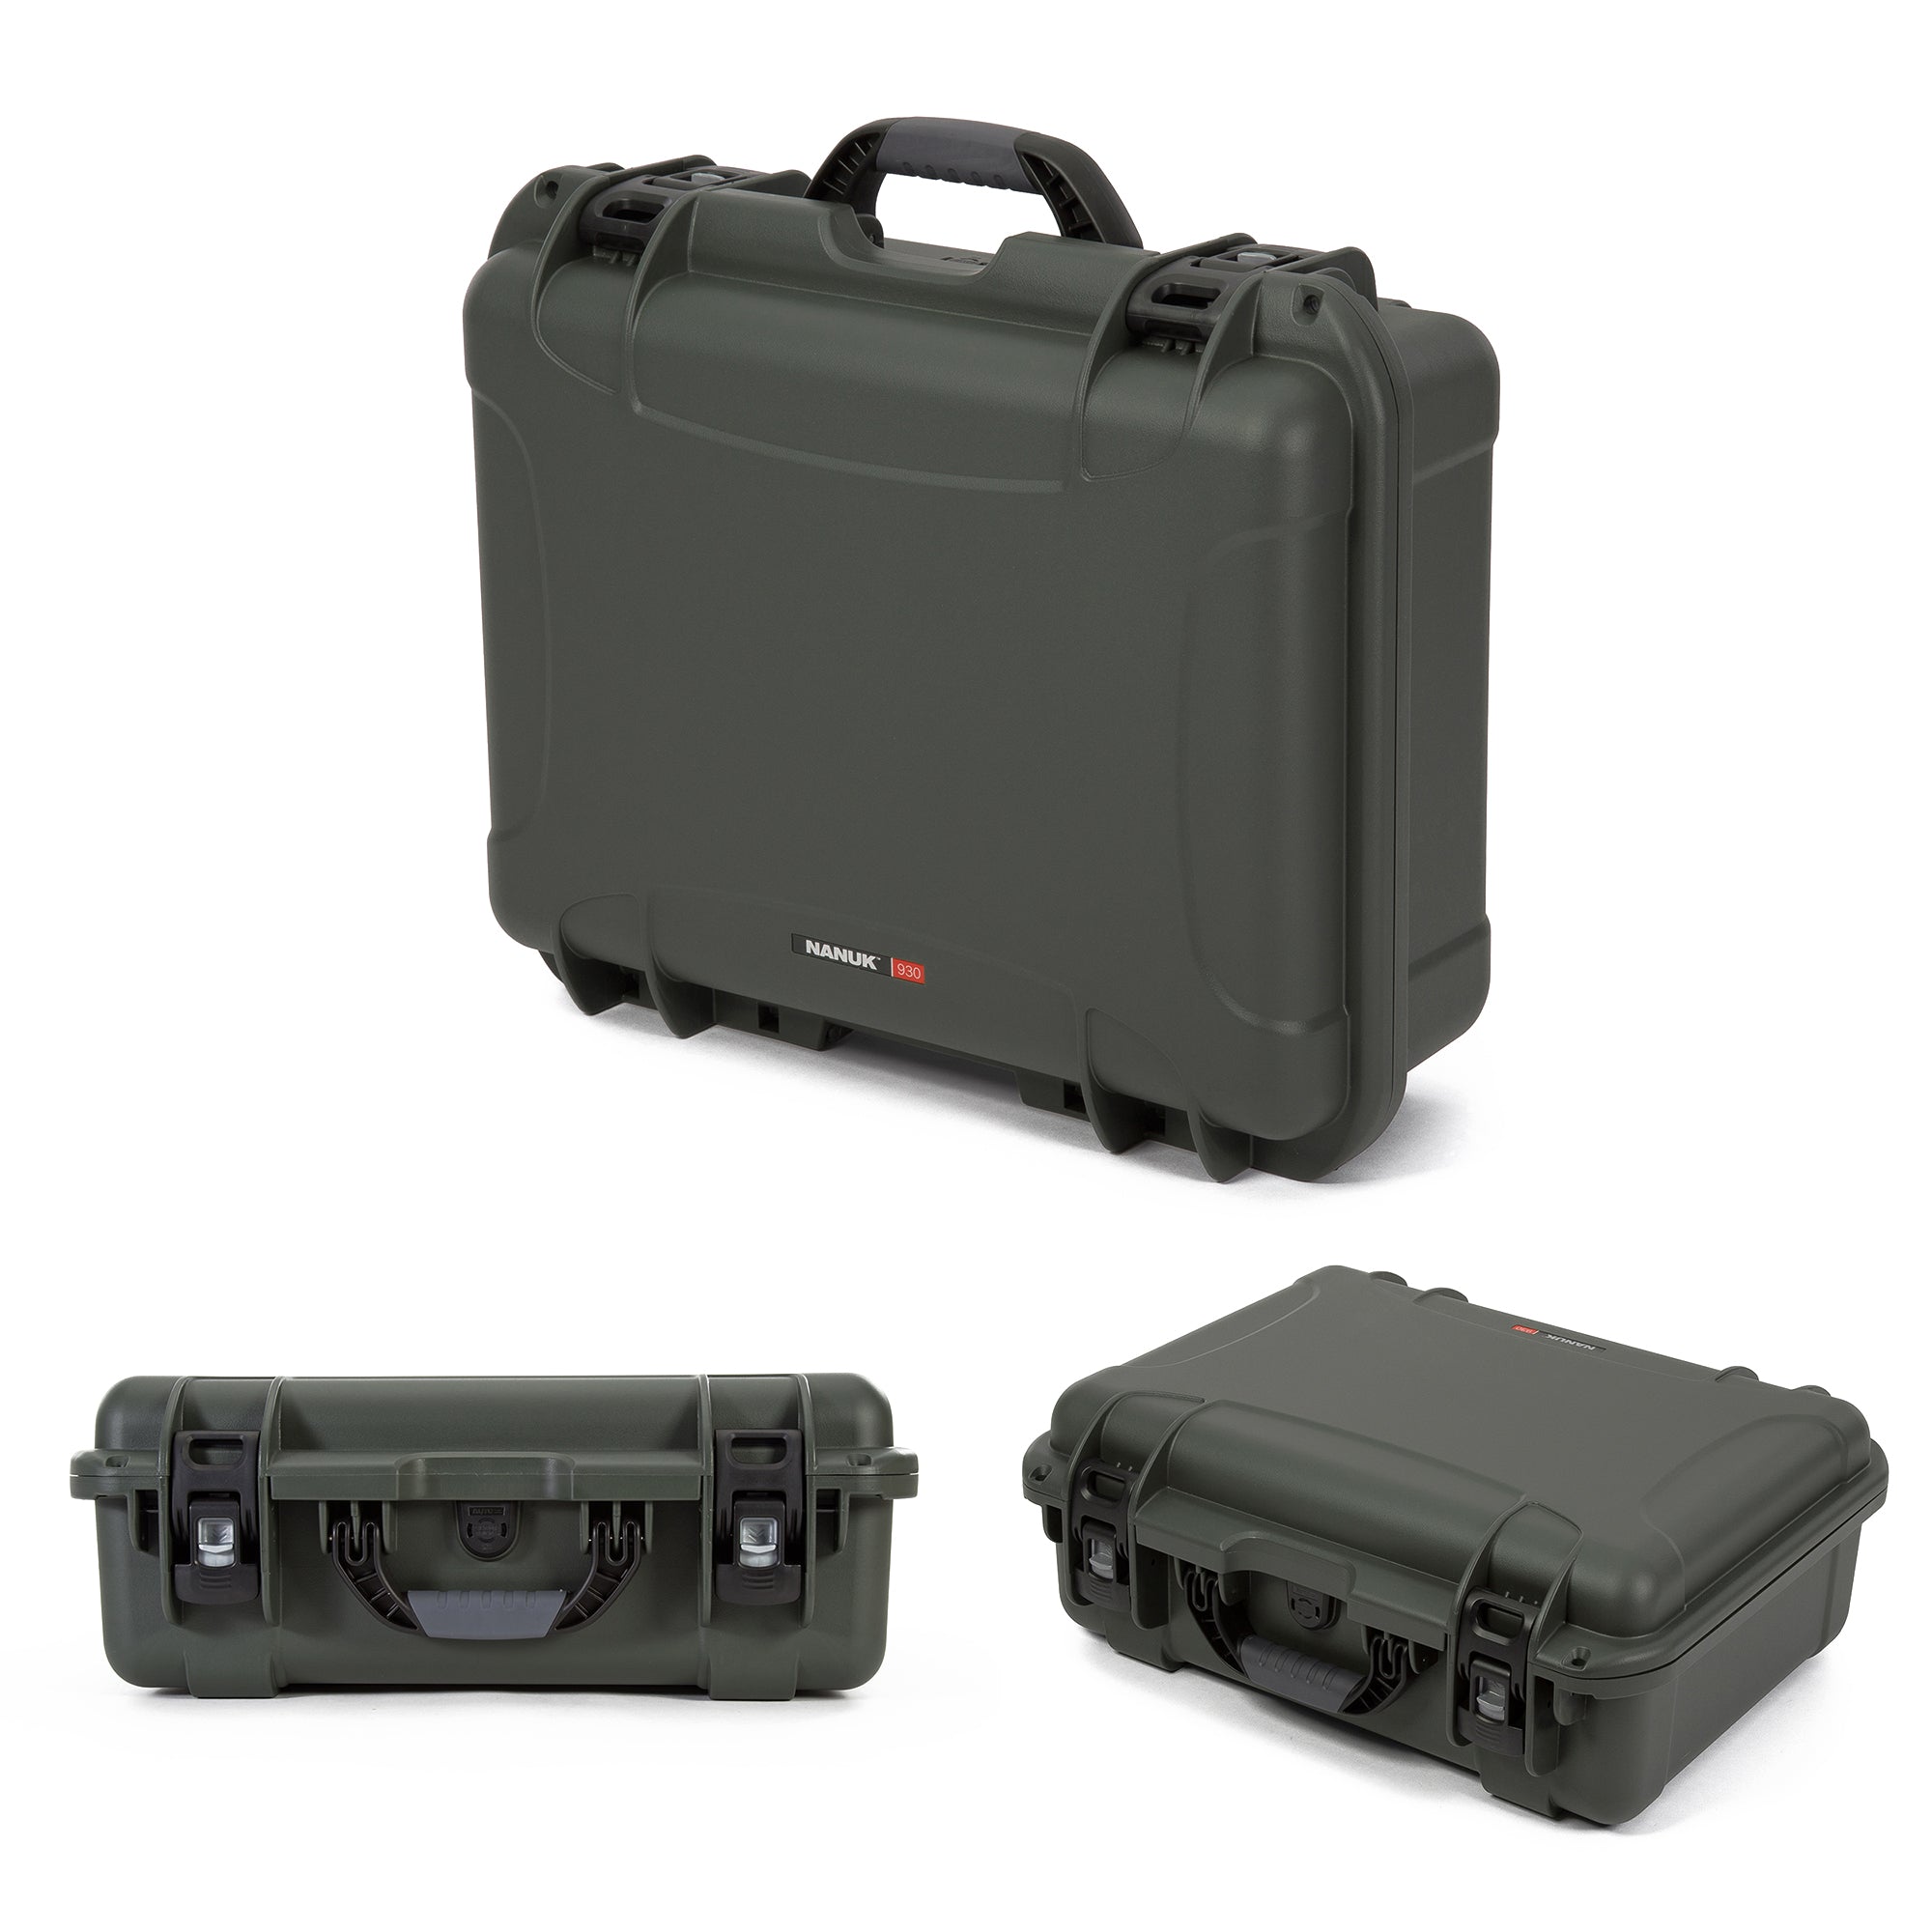 Nanuk 930 Waterproof Hard Case with Custom Foam Insert for DJI Ronin-SC - Olive